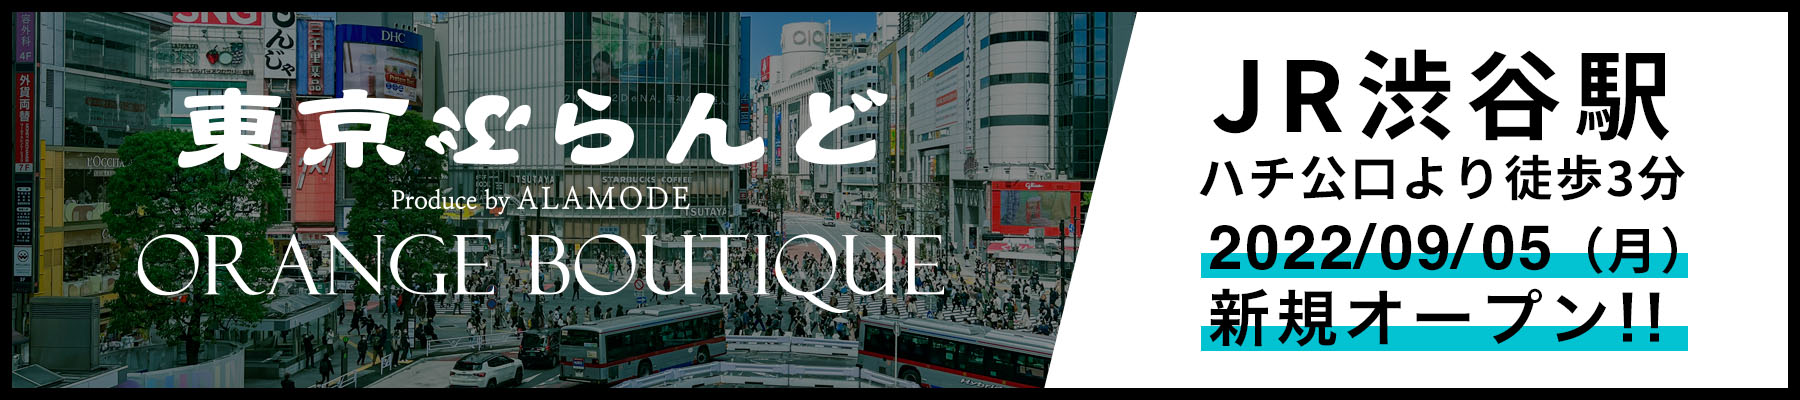 東京ぶらんど produce by ALAMODE × ORANGE BUTIQUE 渋谷店 新規オープンのお知らせ